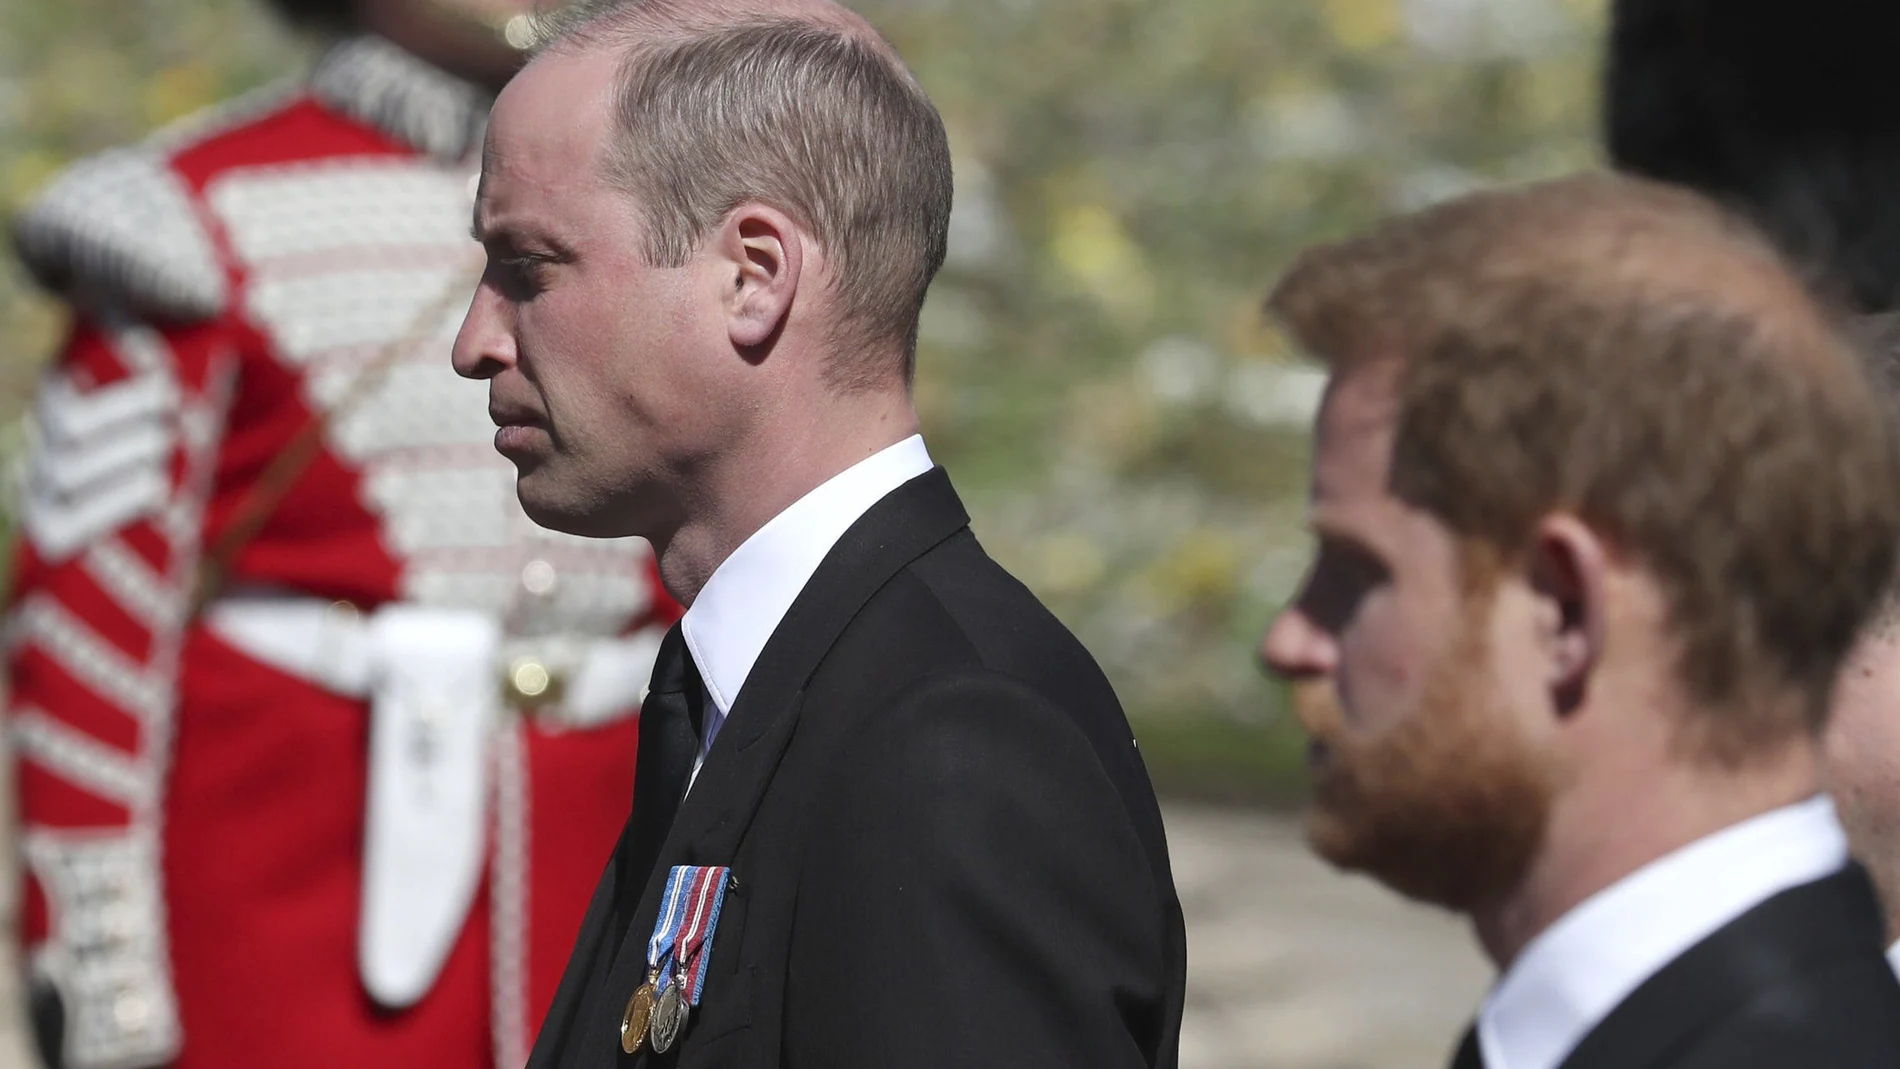 El príncipe William, junto a su hermano, Harry, en el funeral del príncipe Felipe de Edimburgo. (Gareth Fuller/Pool via AP)